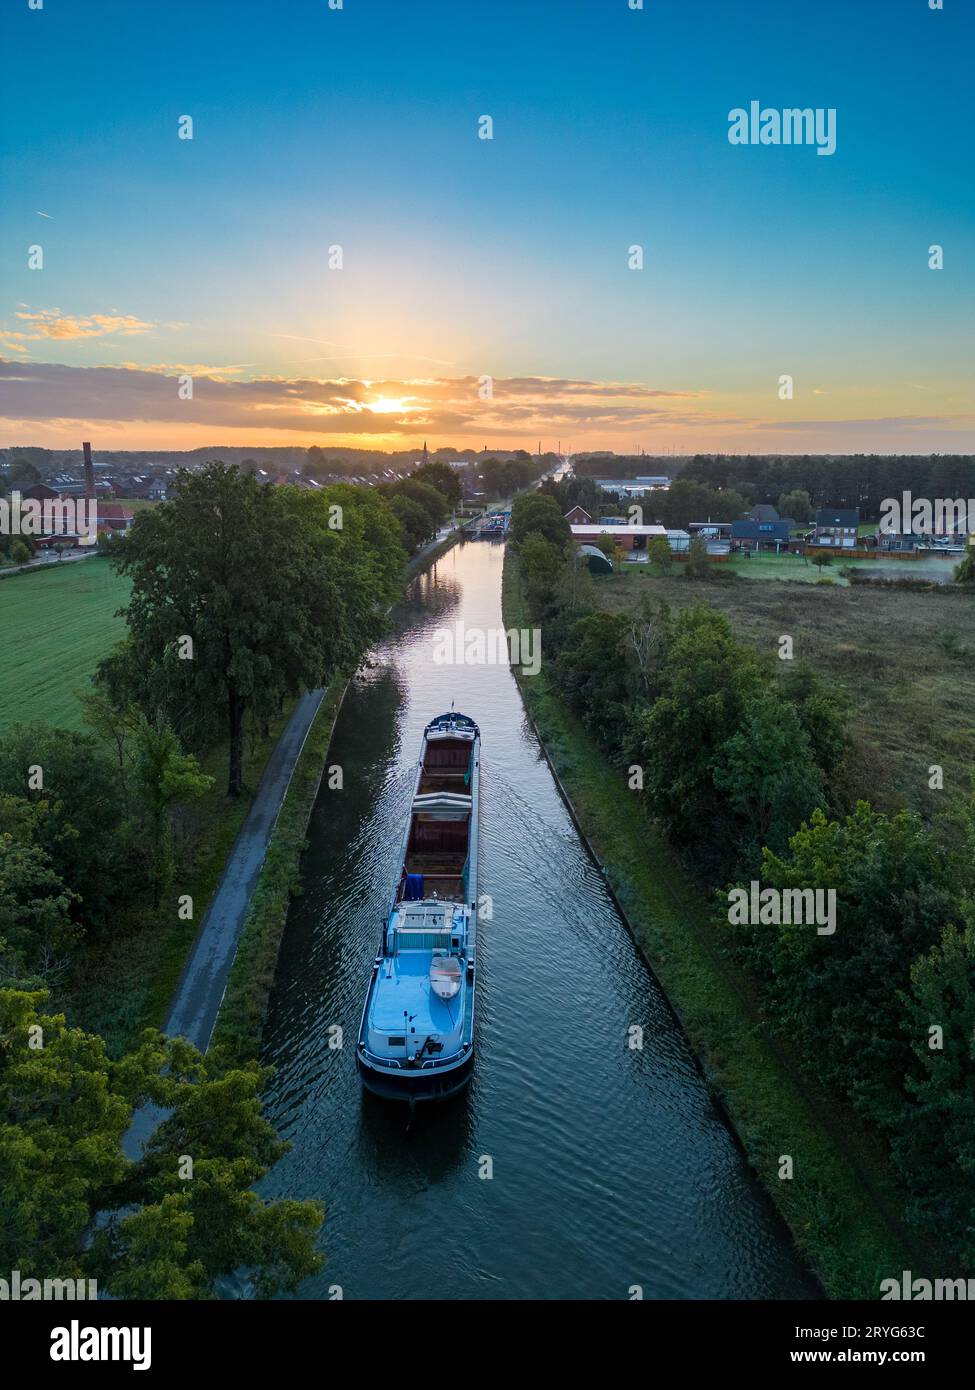 Aus der Vogelperspektive eines farbenfrohen, dramatischen Sonnenaufgangs über einem Kanal mit einem Frachtboot in Belgien. Kanäle mit Wasser für den Transport, Landwirtschaft Stockfoto